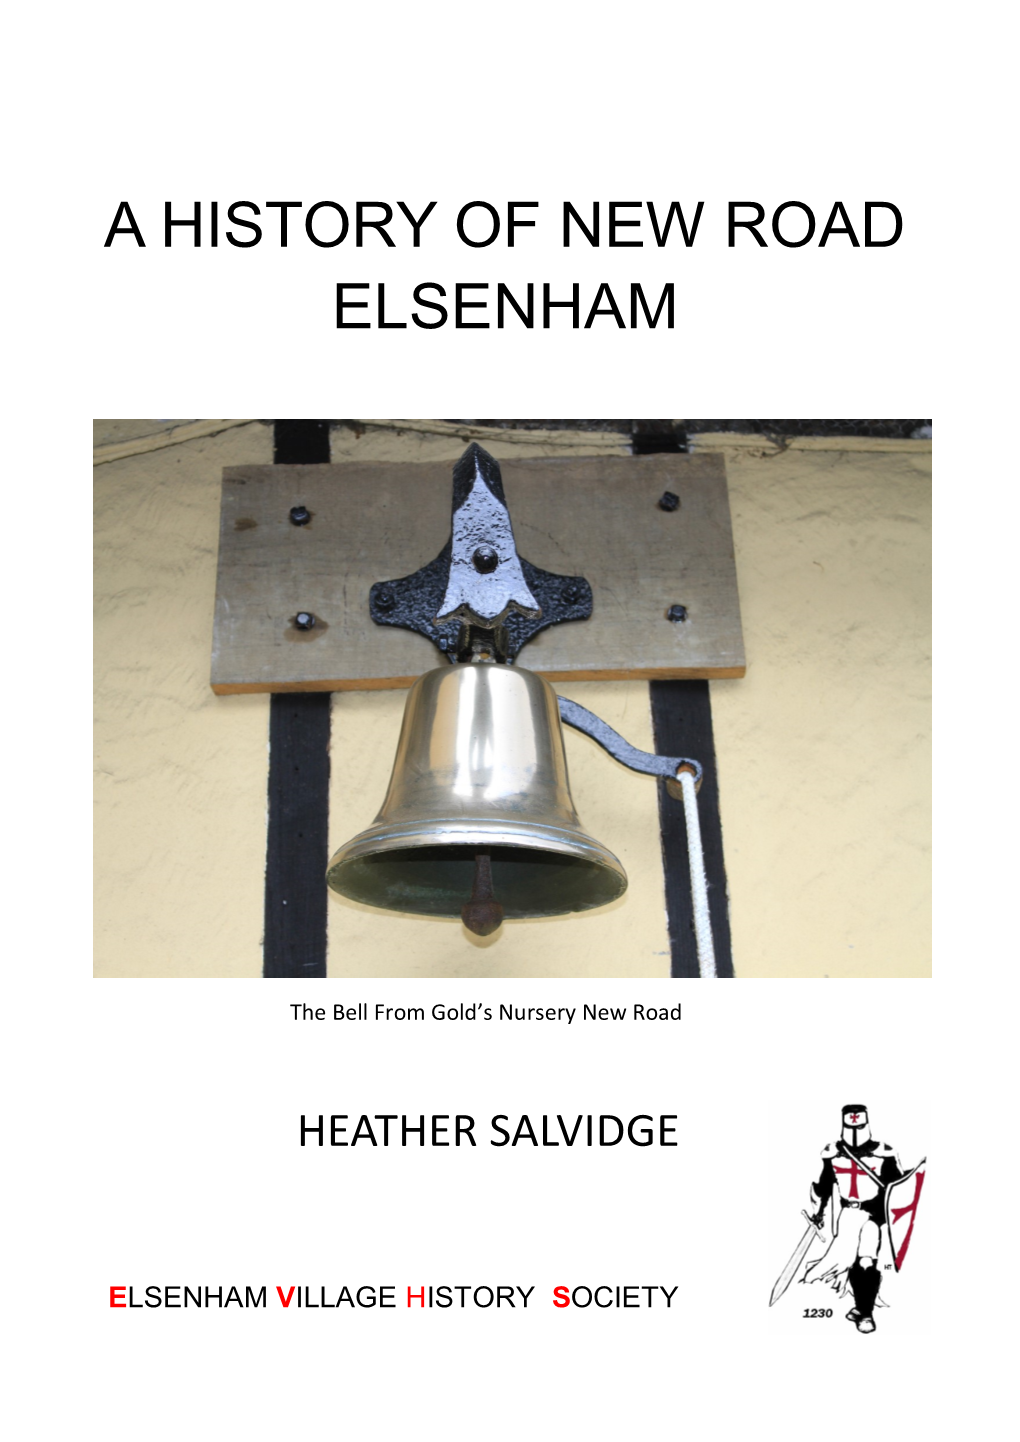 A History of New Road Elsenham